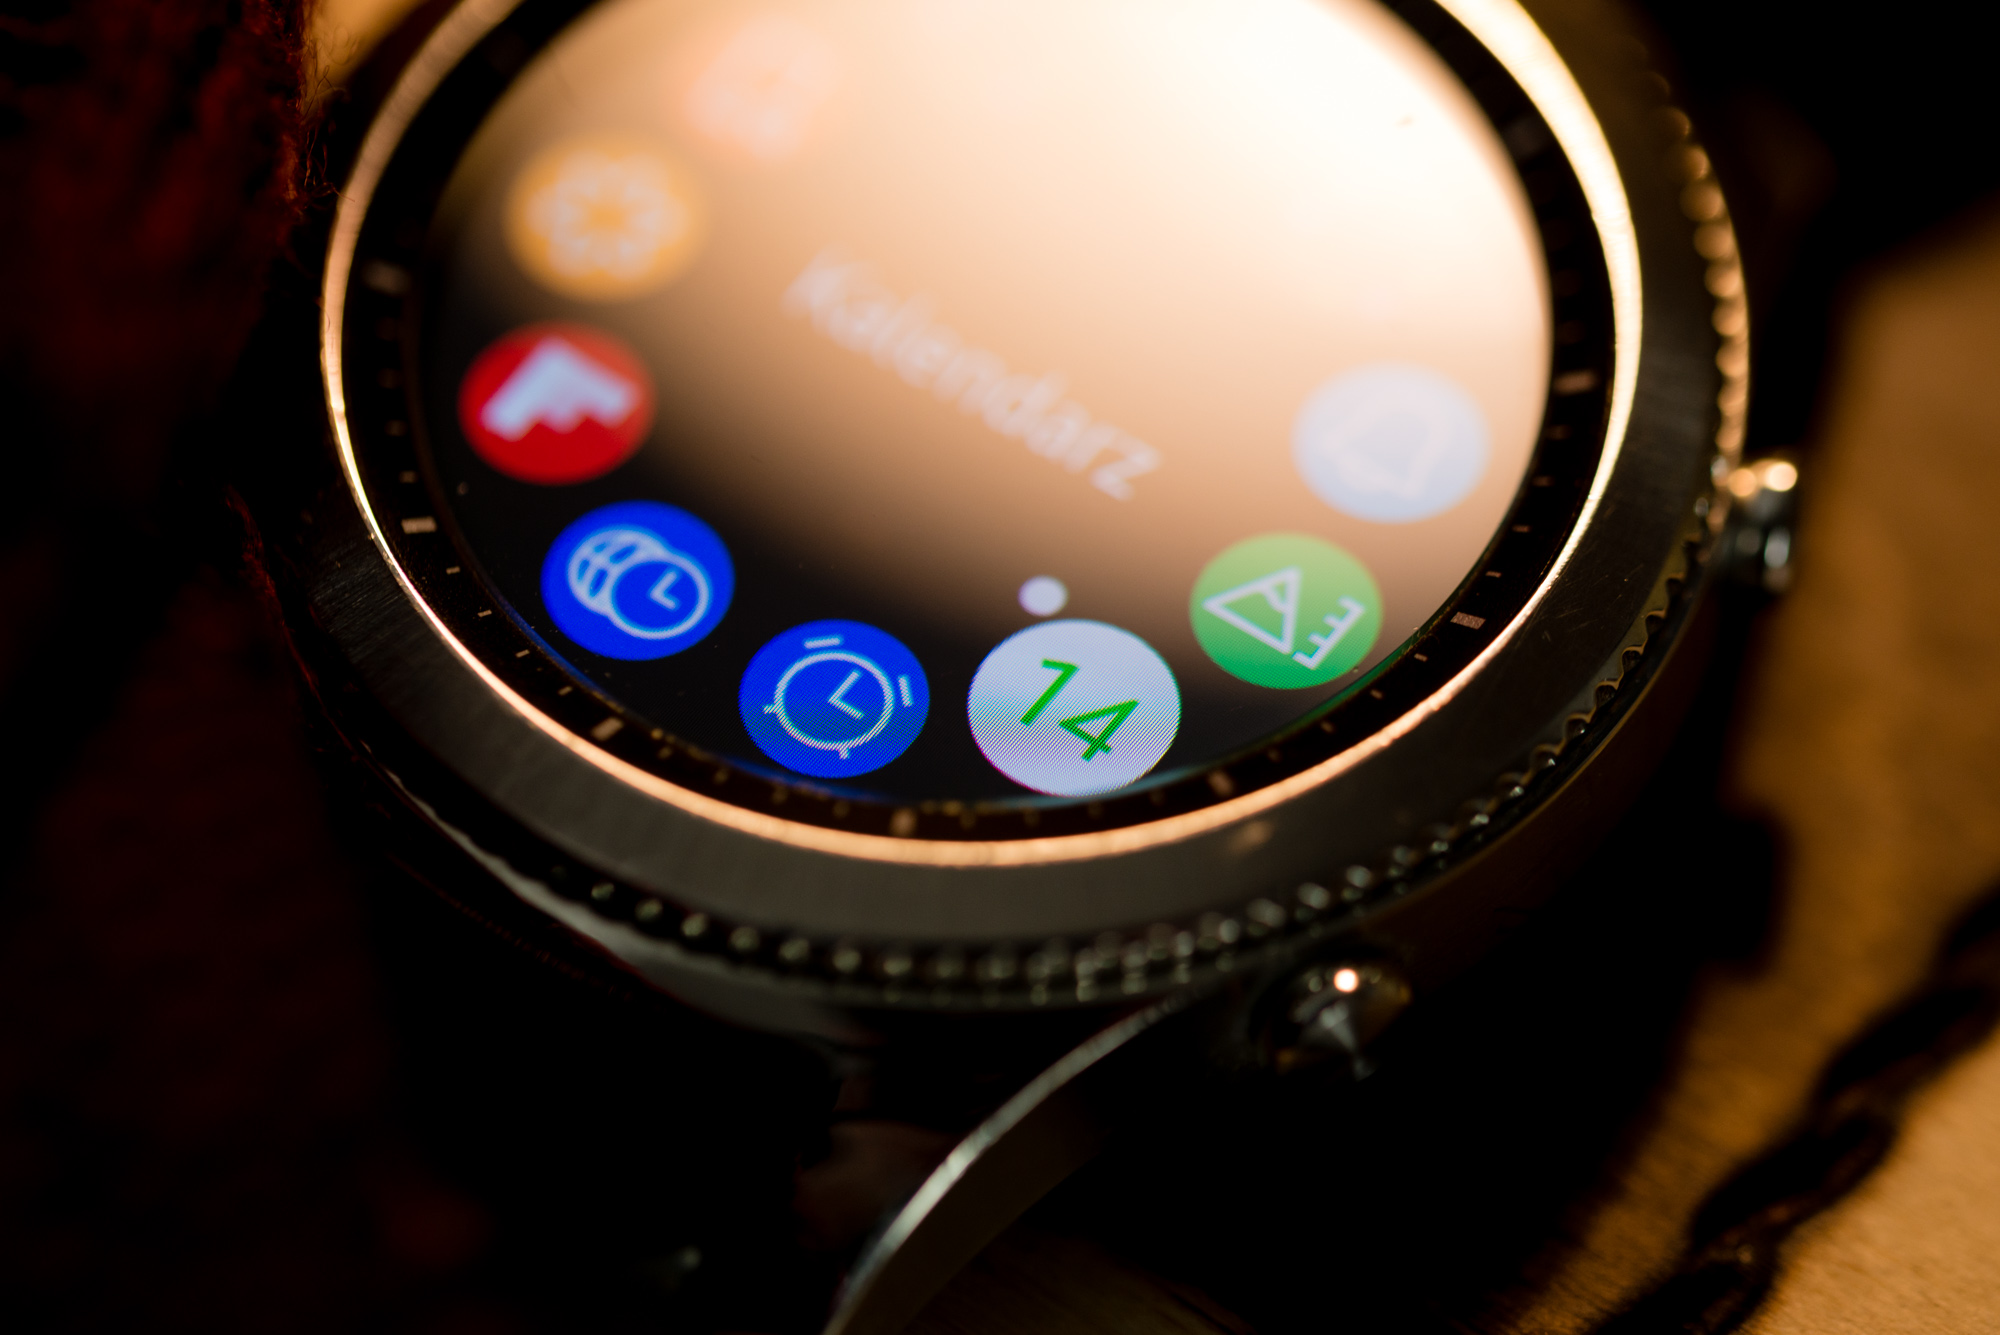 Новая версия Tizen еще более усовершенствовала часы благодаря поддержке программы Samsung Connect, которая позволяет управлять интеллектуальными бытовыми приборами в единой родной экосистеме, и в то же время у нас есть мощный список партнеров, устройствами которых можно управлять с уровня часов